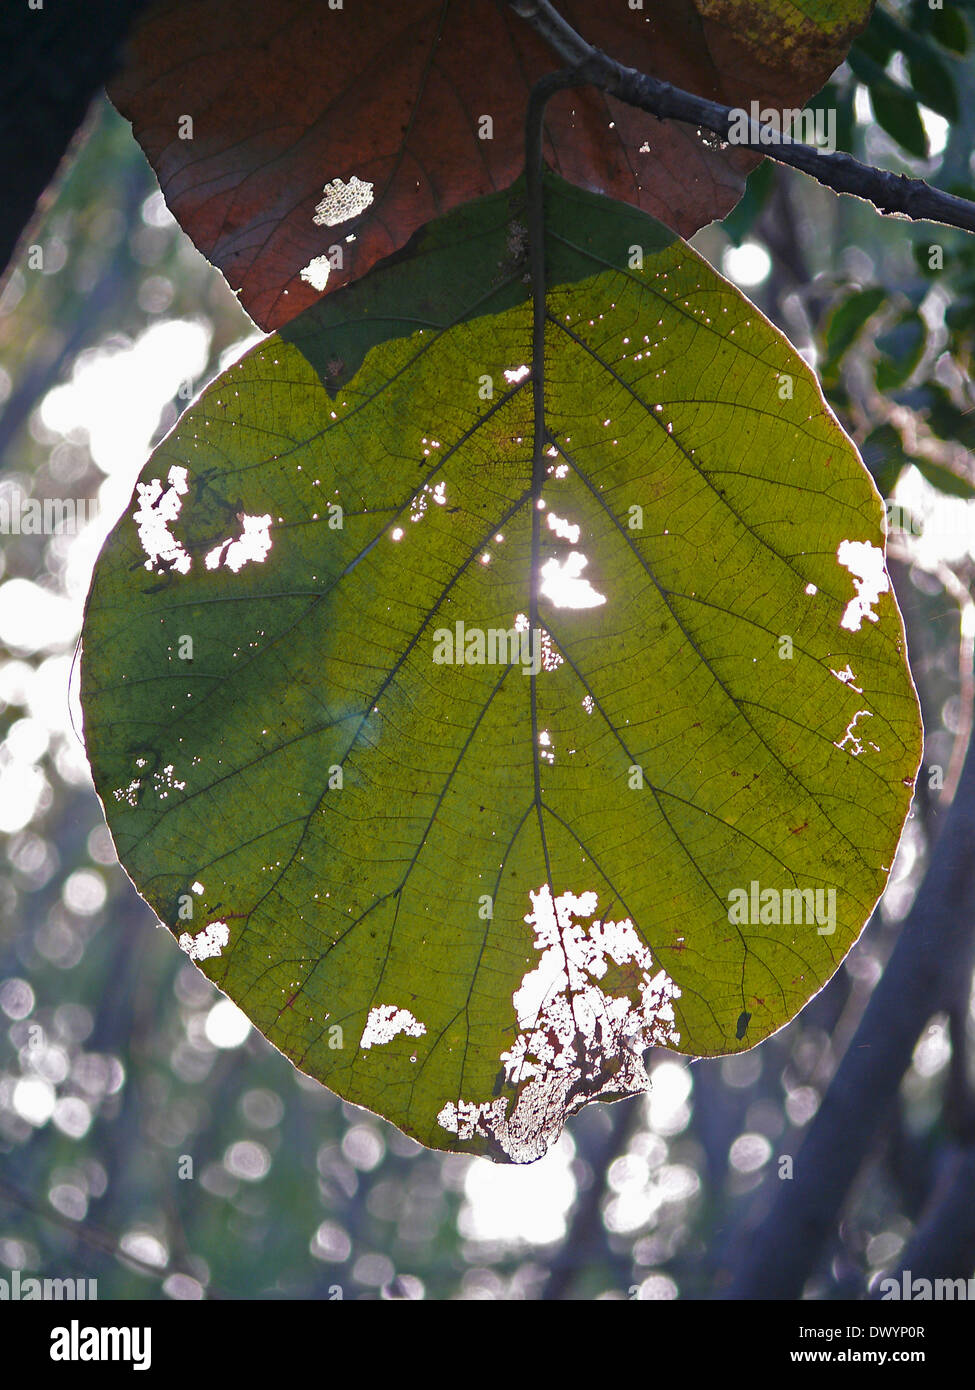 leaf of Teak tree, Tectona grandis L. F. Stock Photo